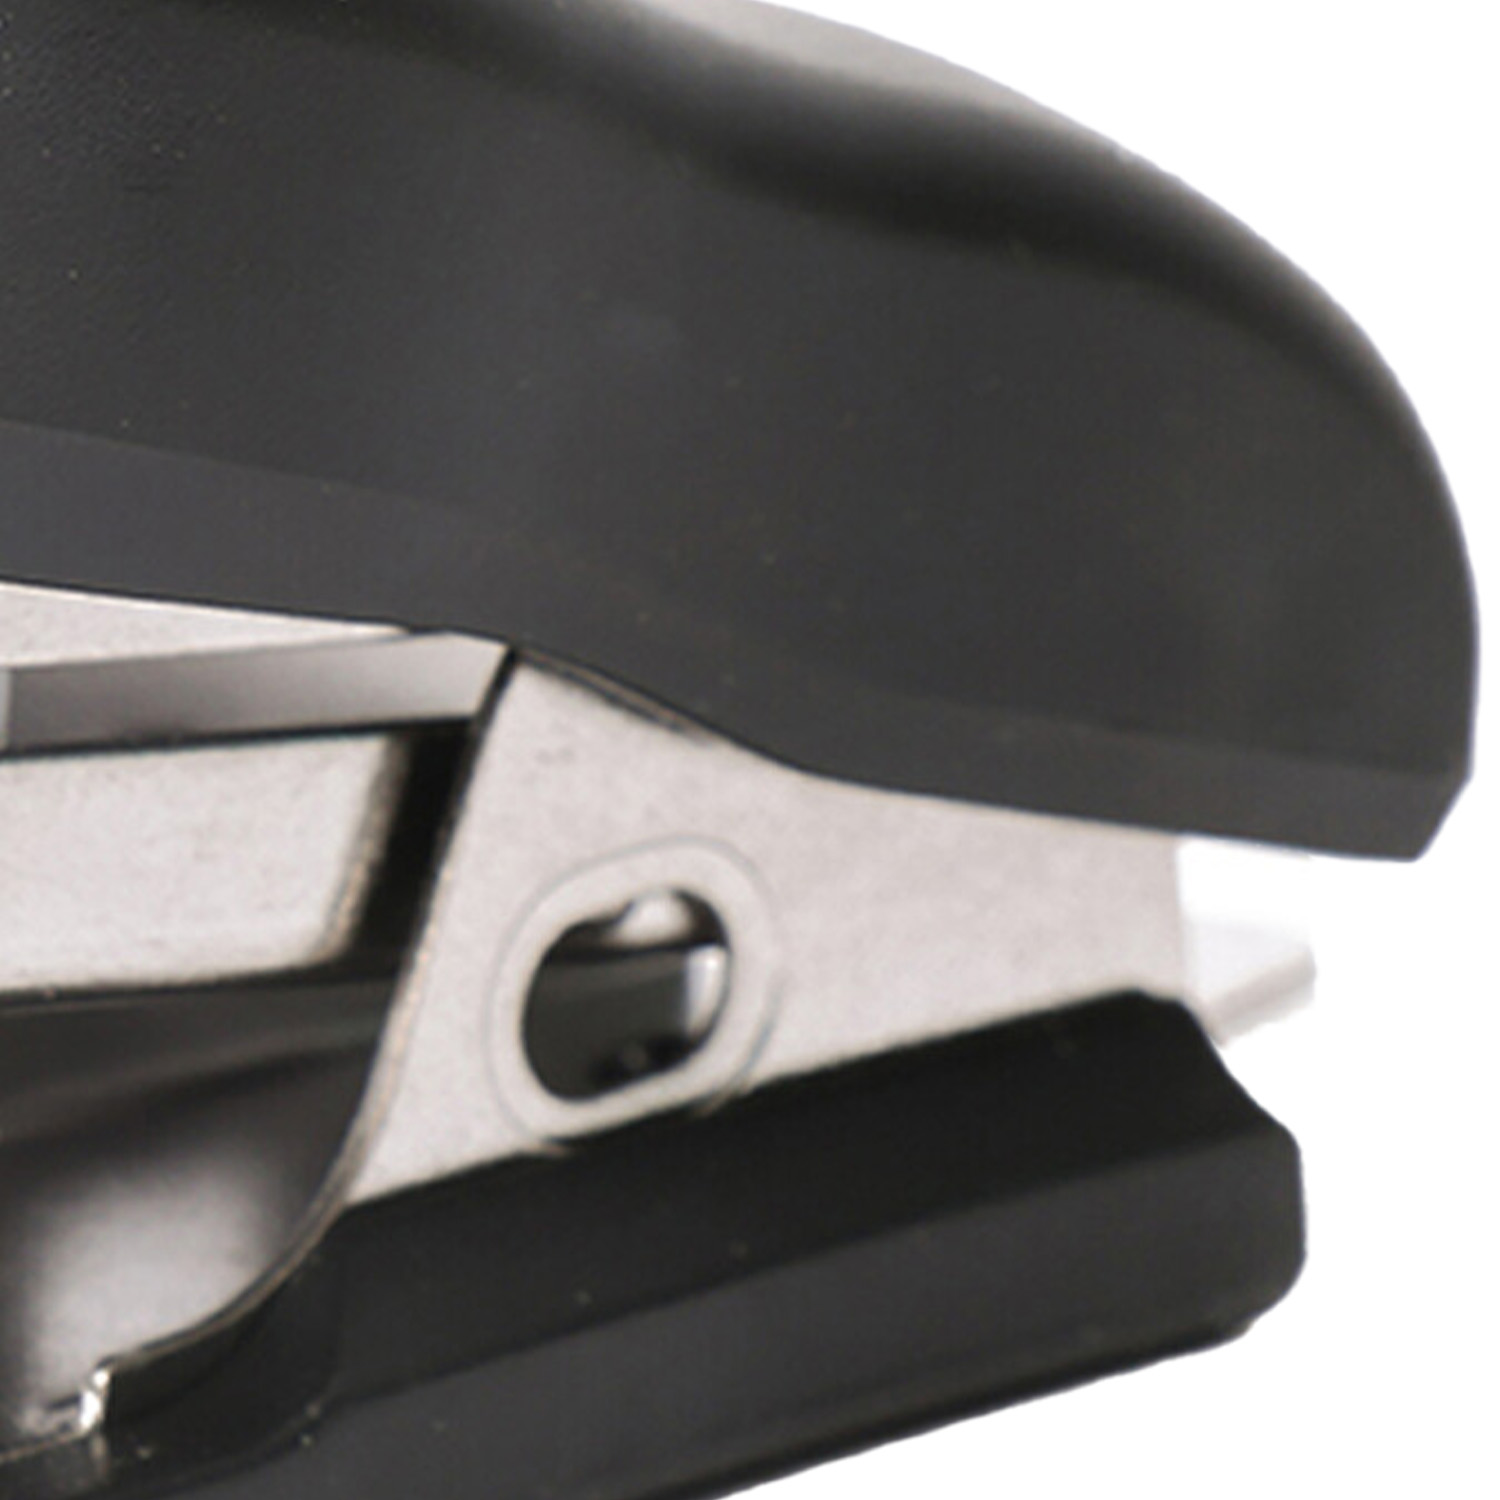 Mini Portable Stapler - Black Image 3